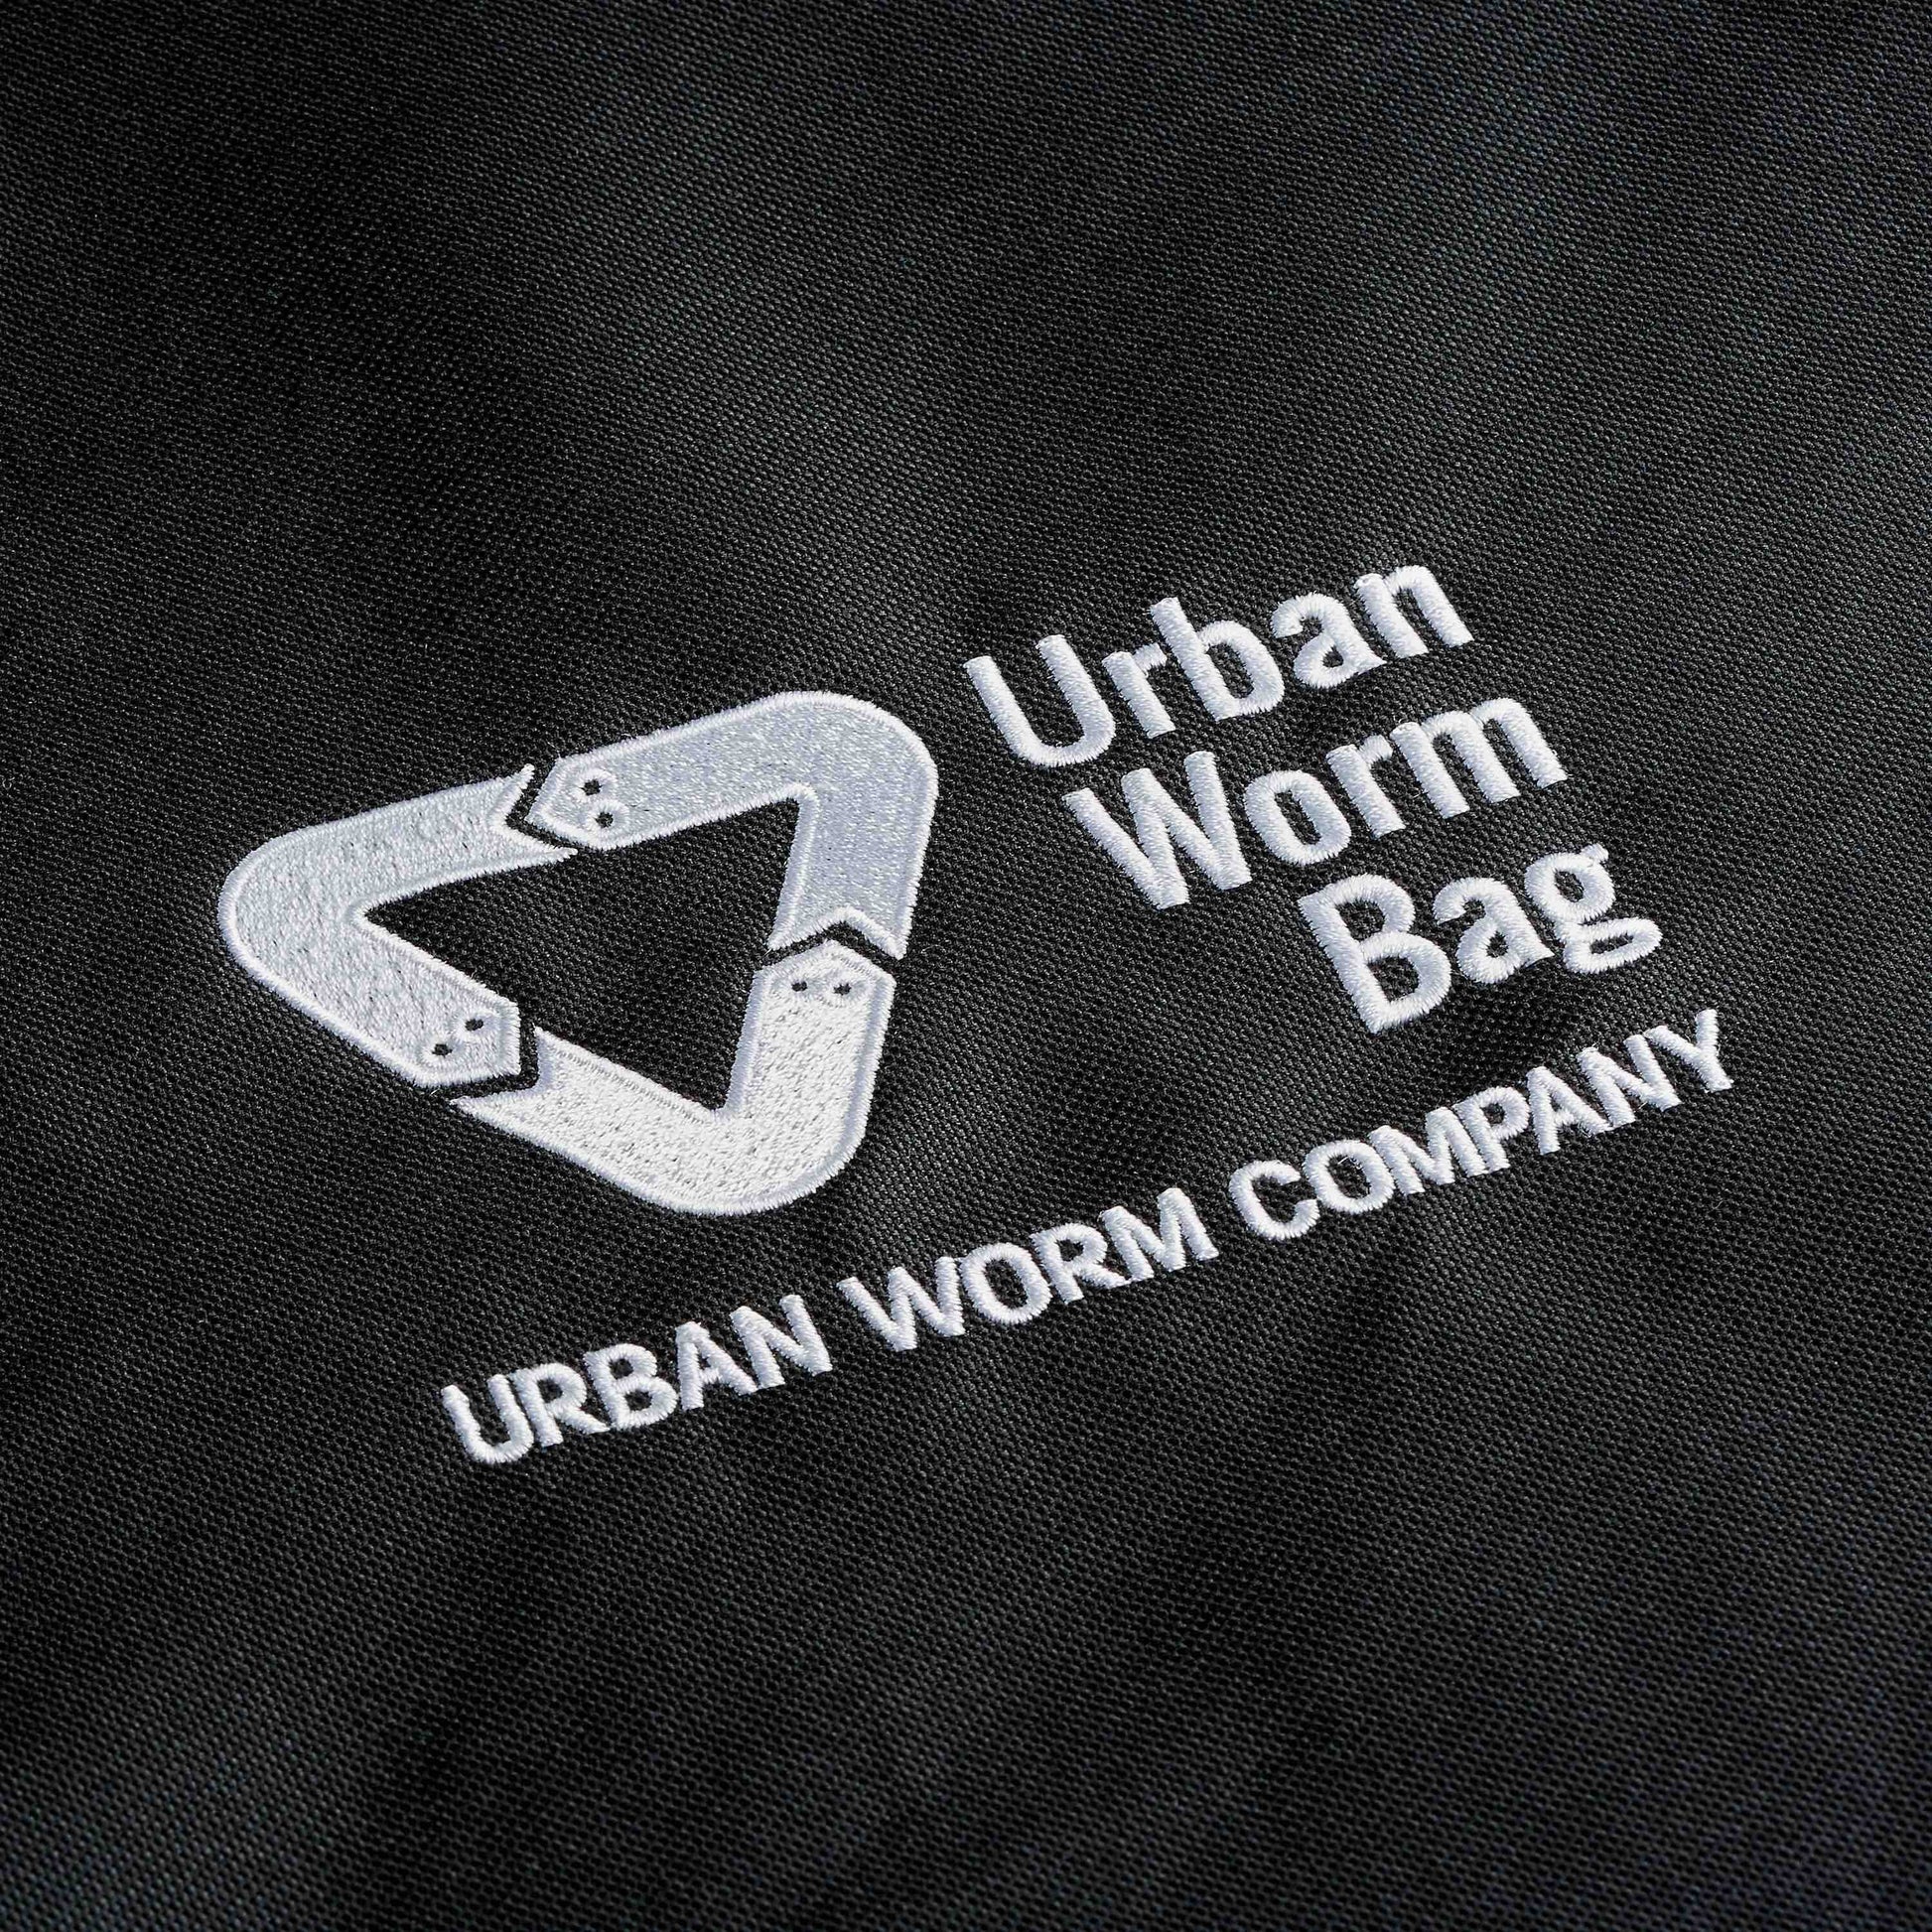 Urban Worm Bag - novinka v Európe!